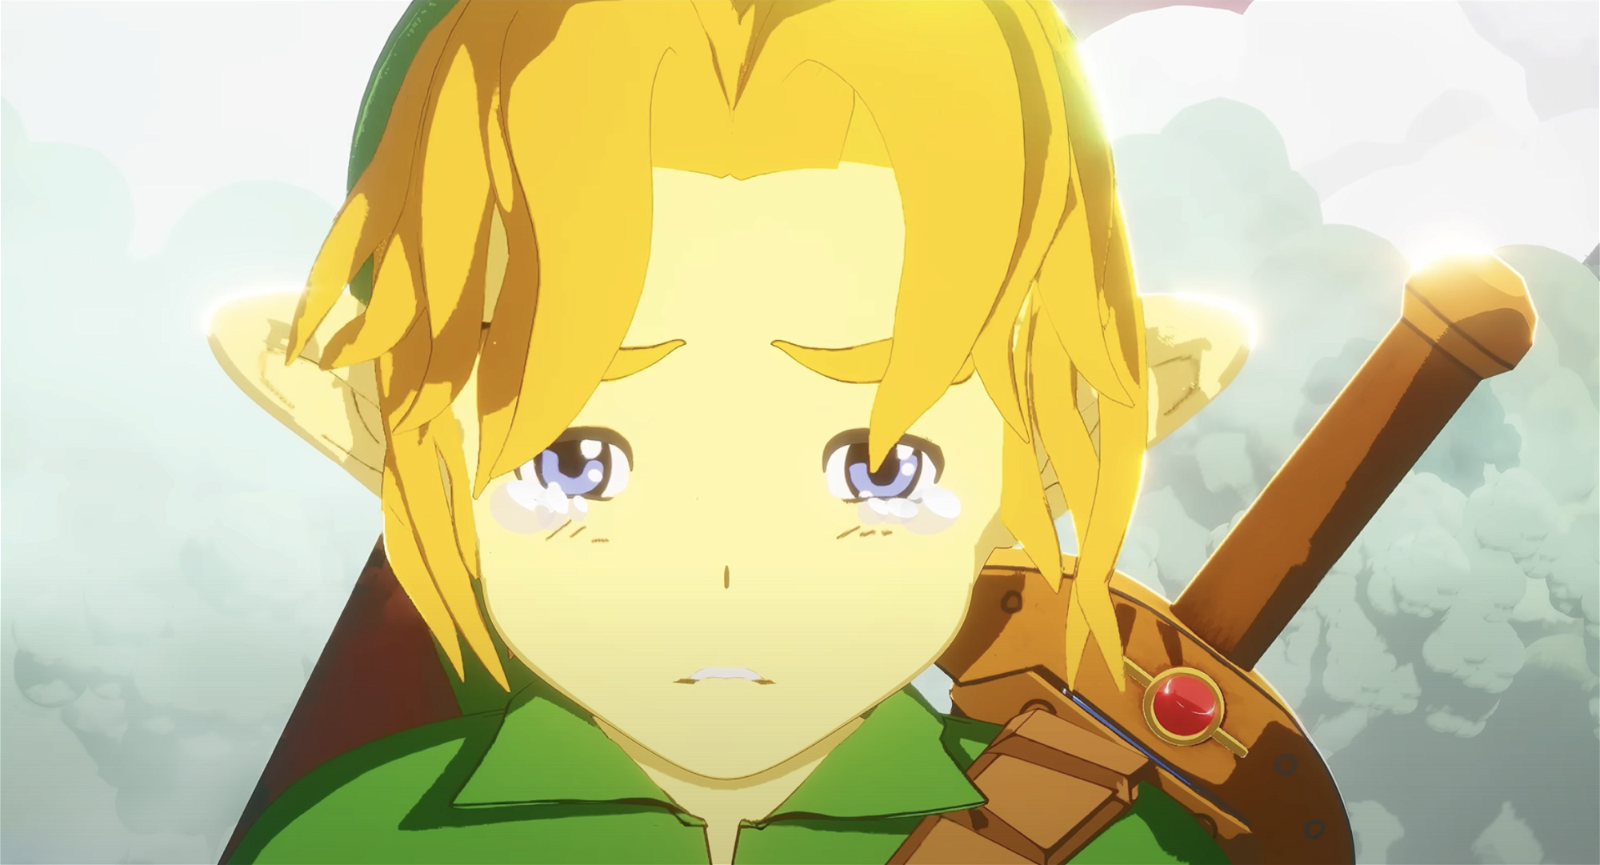 Immagine di Fermatevi 18 minuti per guardare questo film di Zelda, è la cosa più bella che vedrete oggi